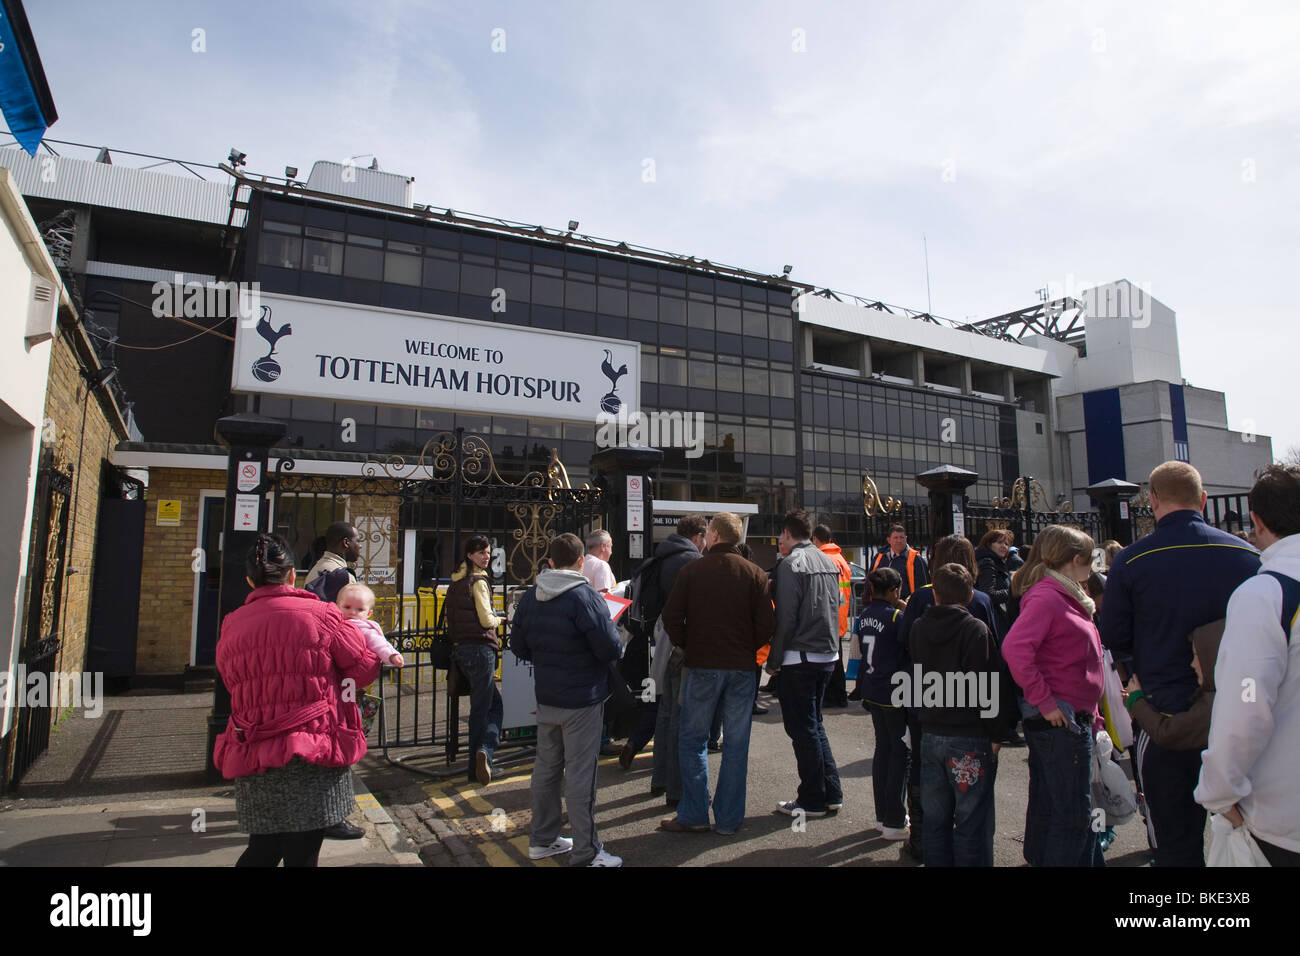 Tottenham Hotspurs Fußballstadion mit Tottenham-Fans vor dem Haupteingang zum Fußballstadion Stockfoto